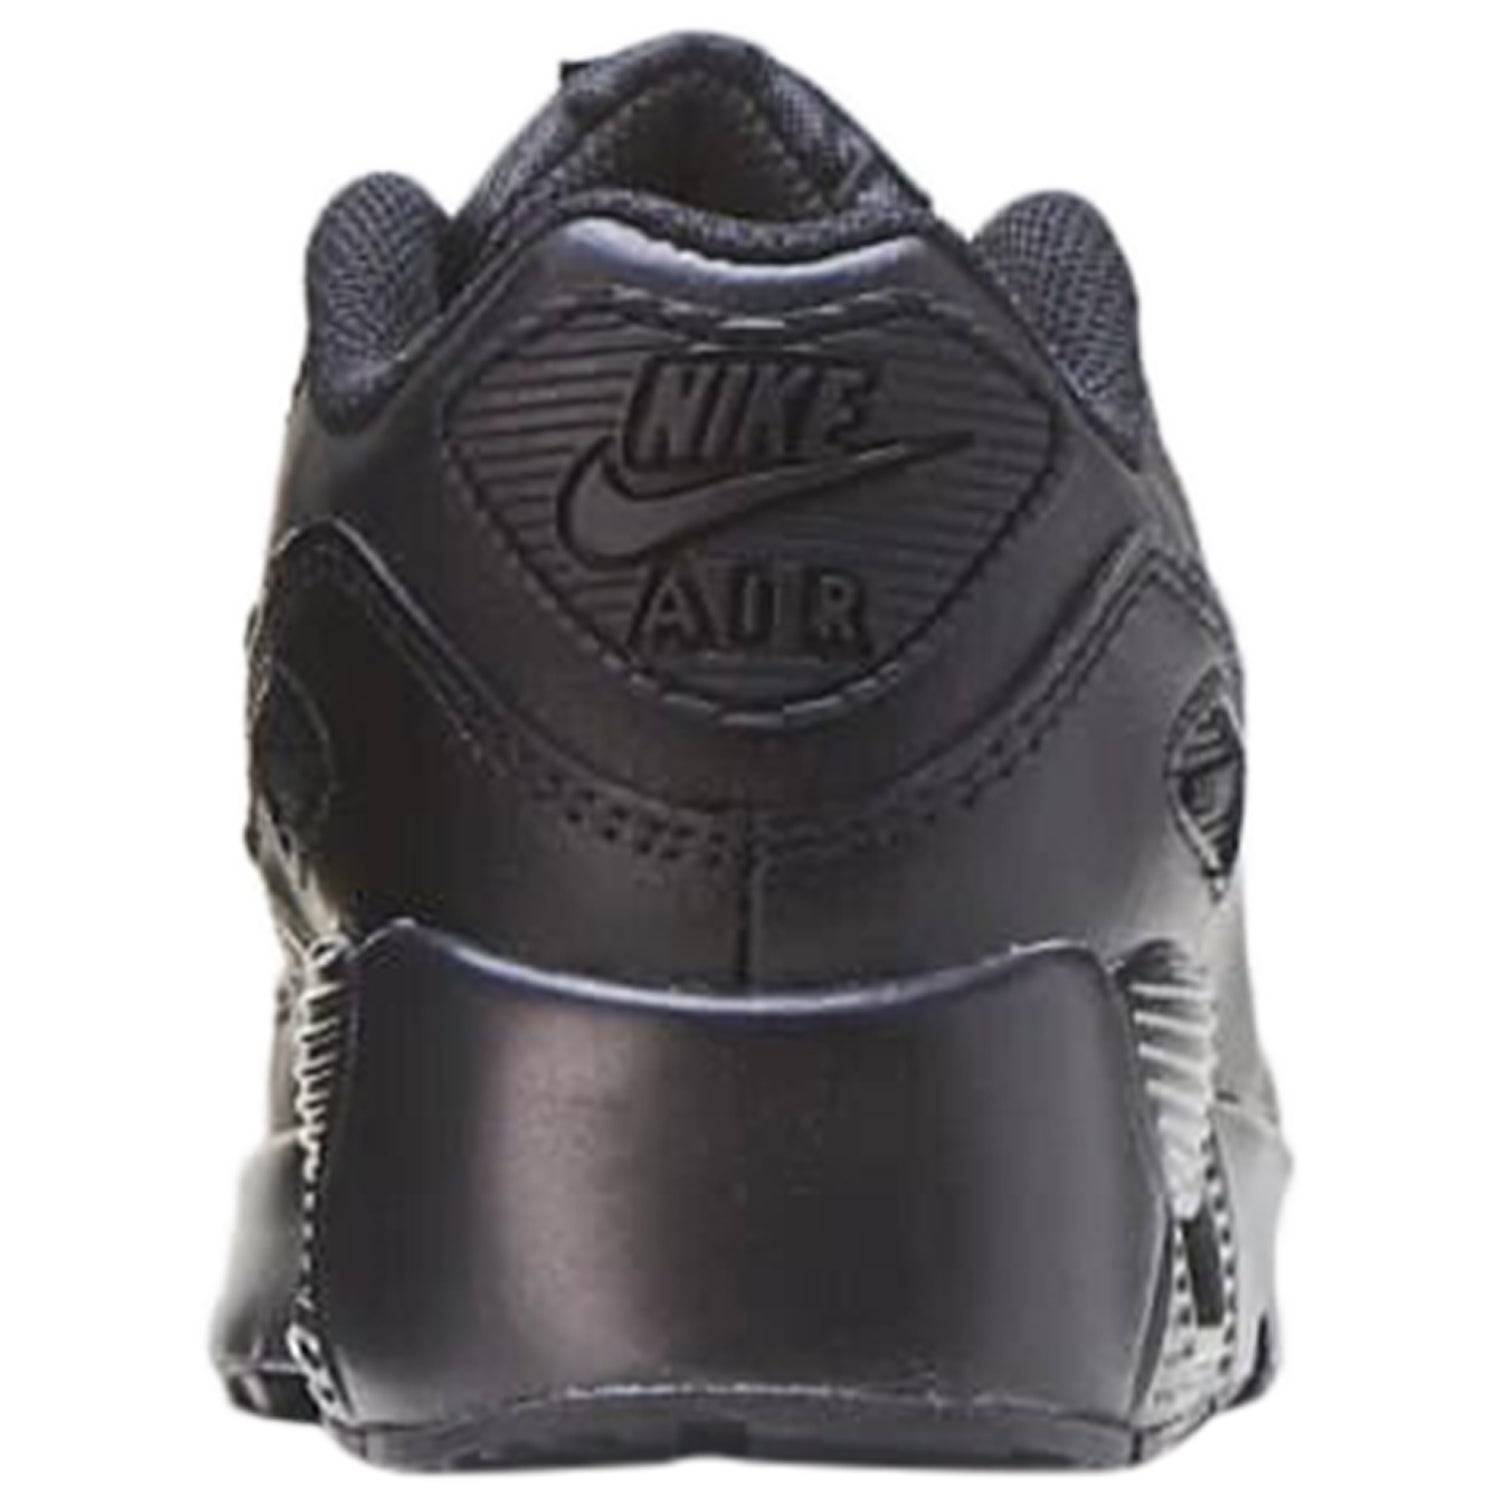 Nike Air Max 90 Black (PS)